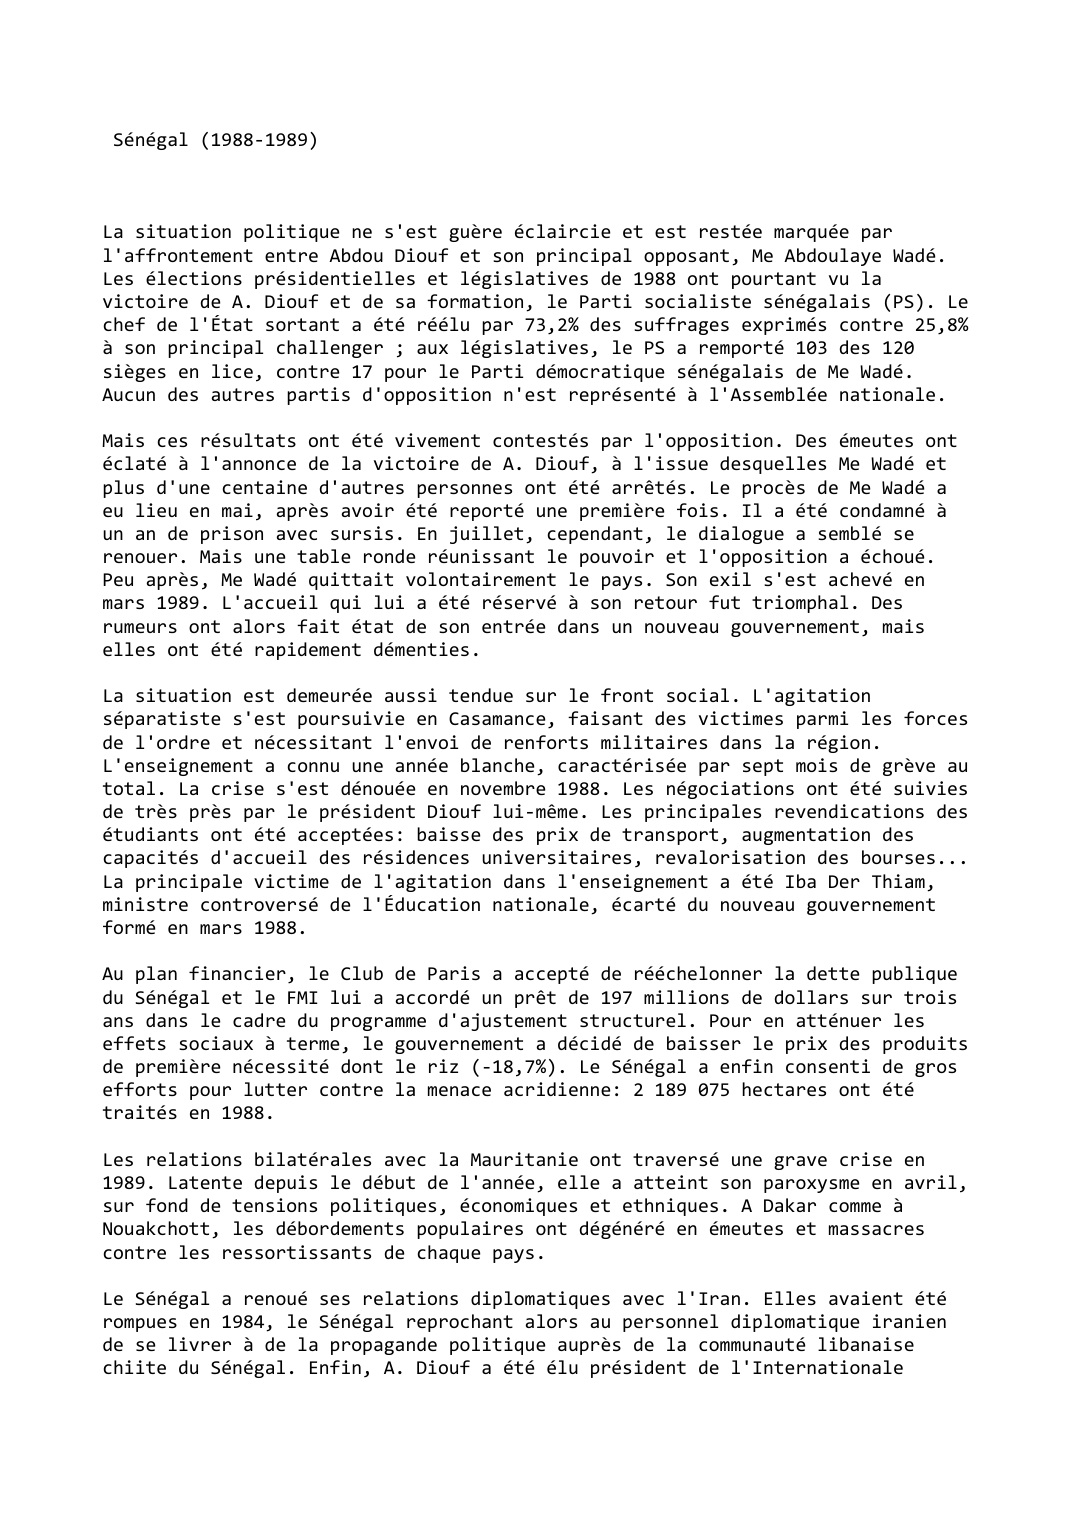 Prévisualisation du document Sénégal (1988-1989)